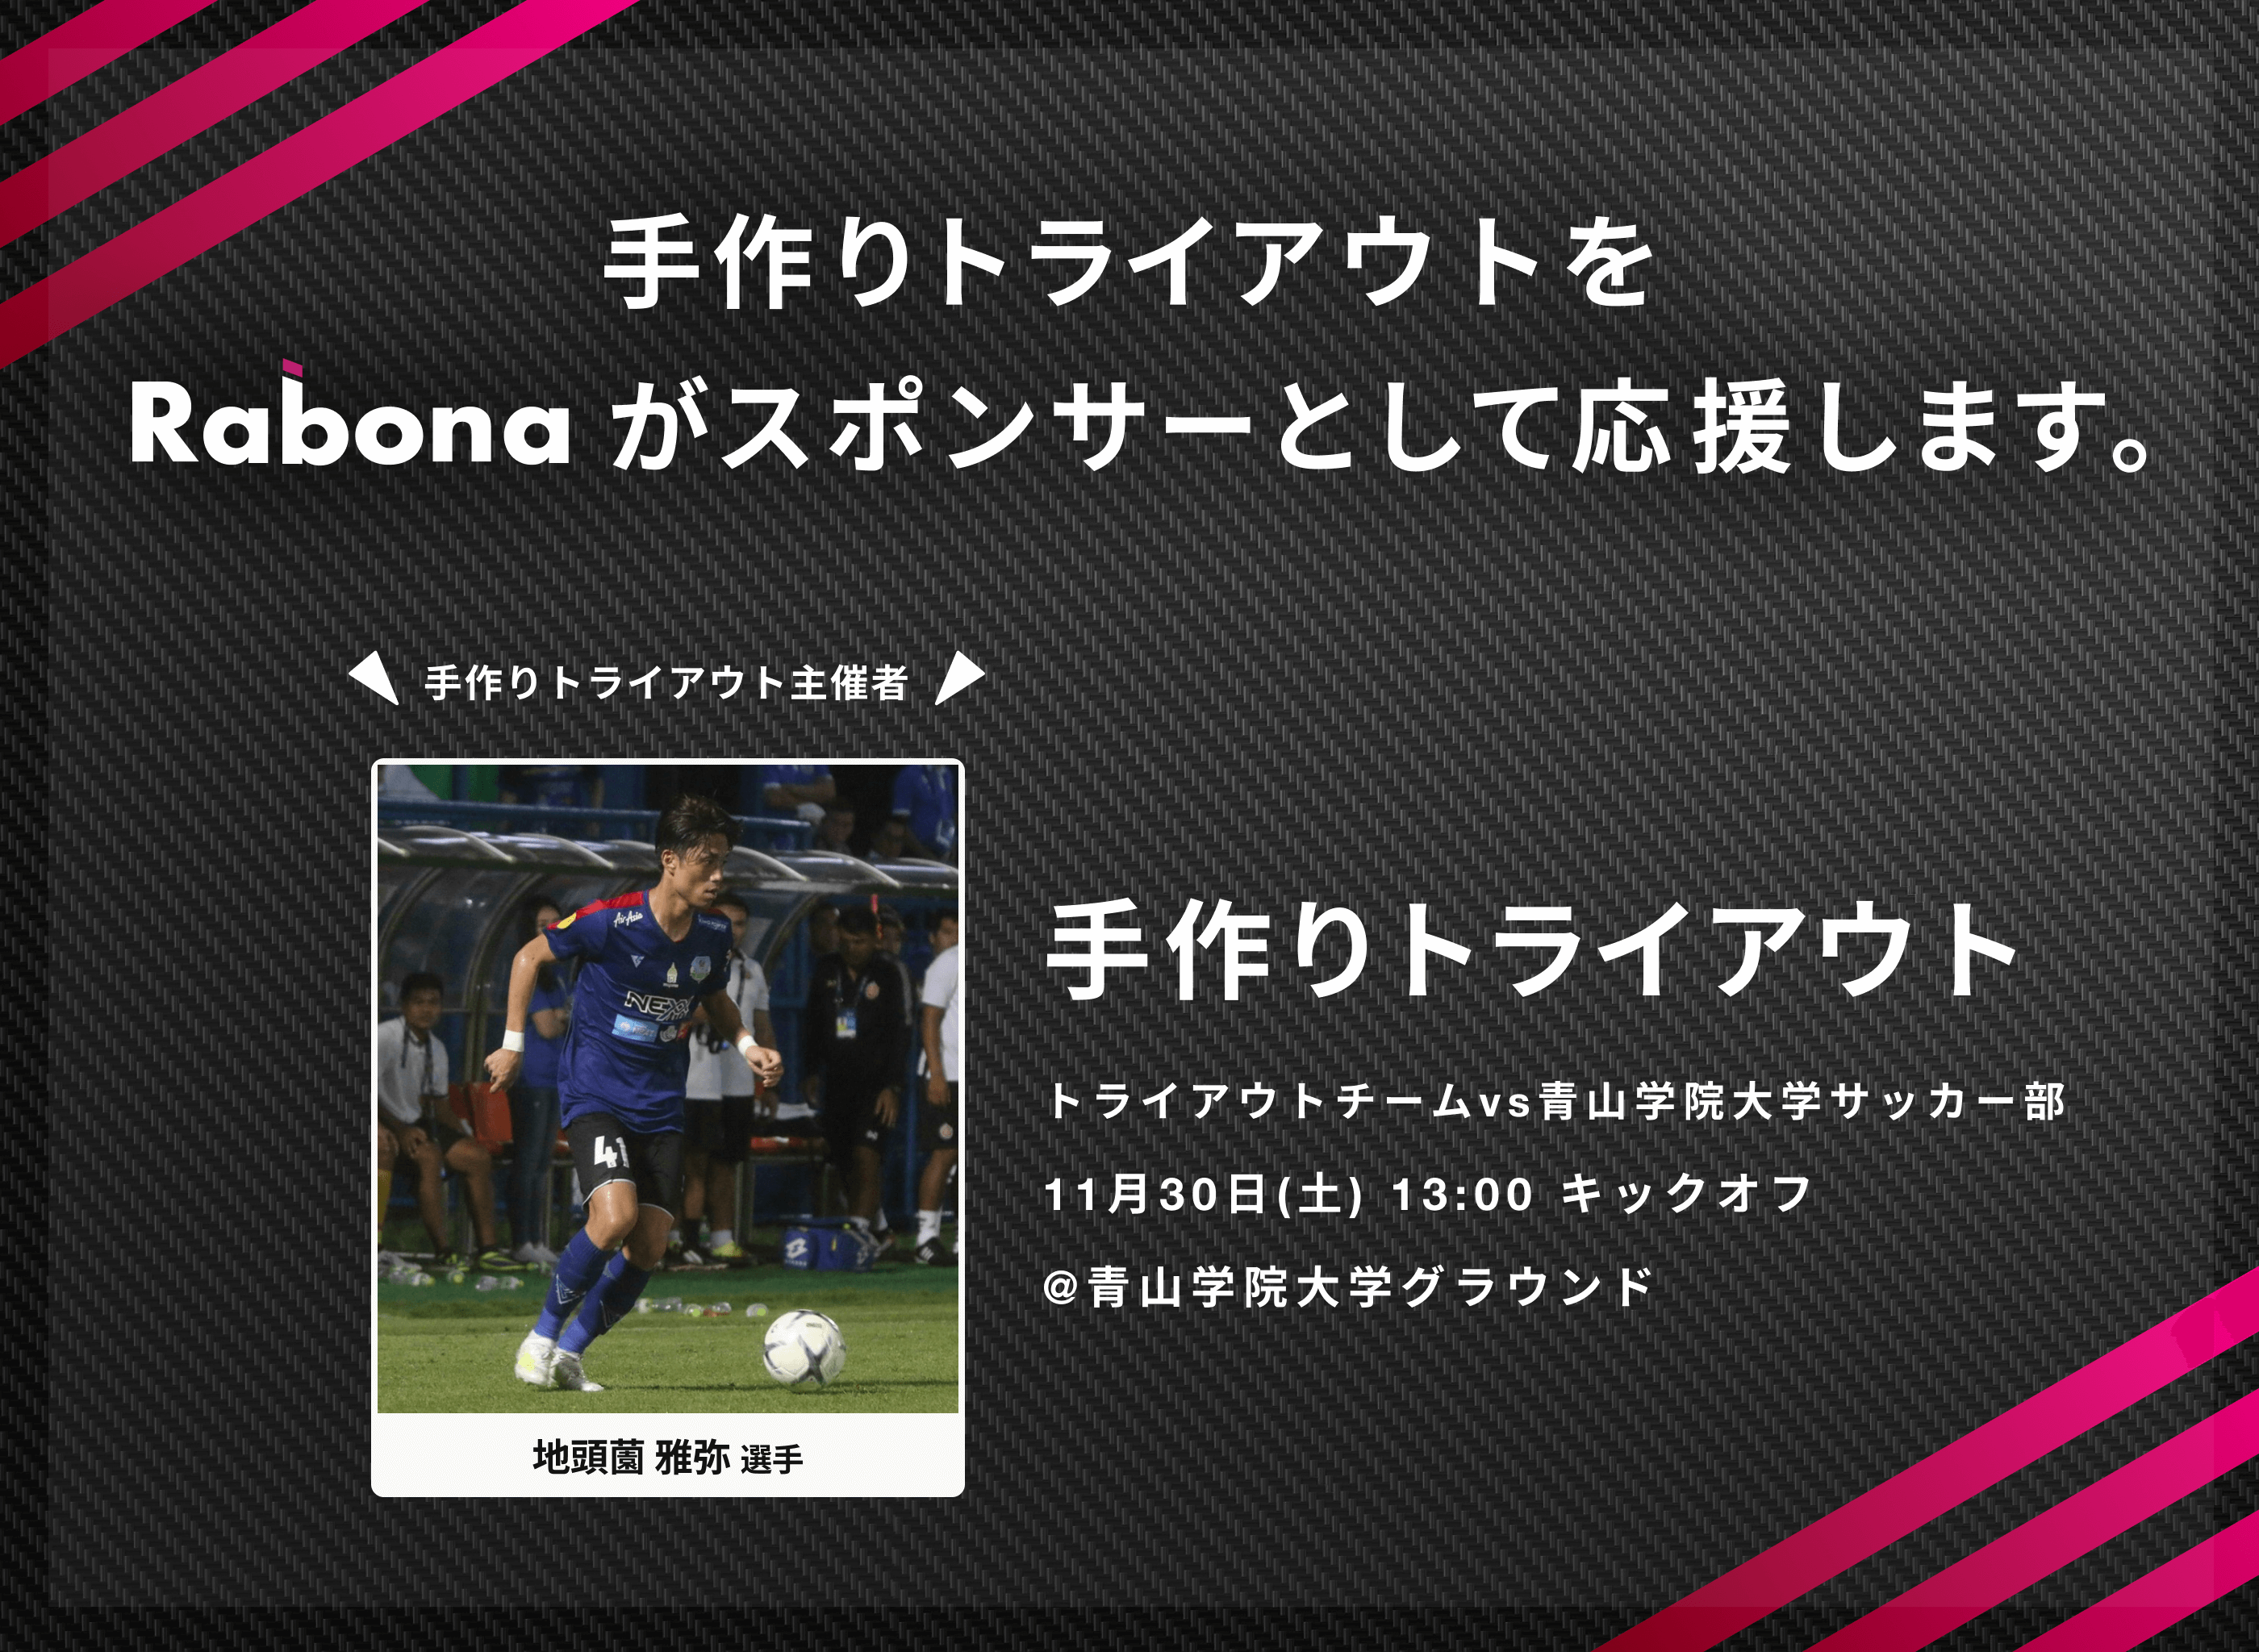 海外で活躍する日本人サッカー選手達が集結する 手作りトライアウト へ Rabona がメインスポンサーとして協賛 Rabona Pte Ltd のプレスリリース